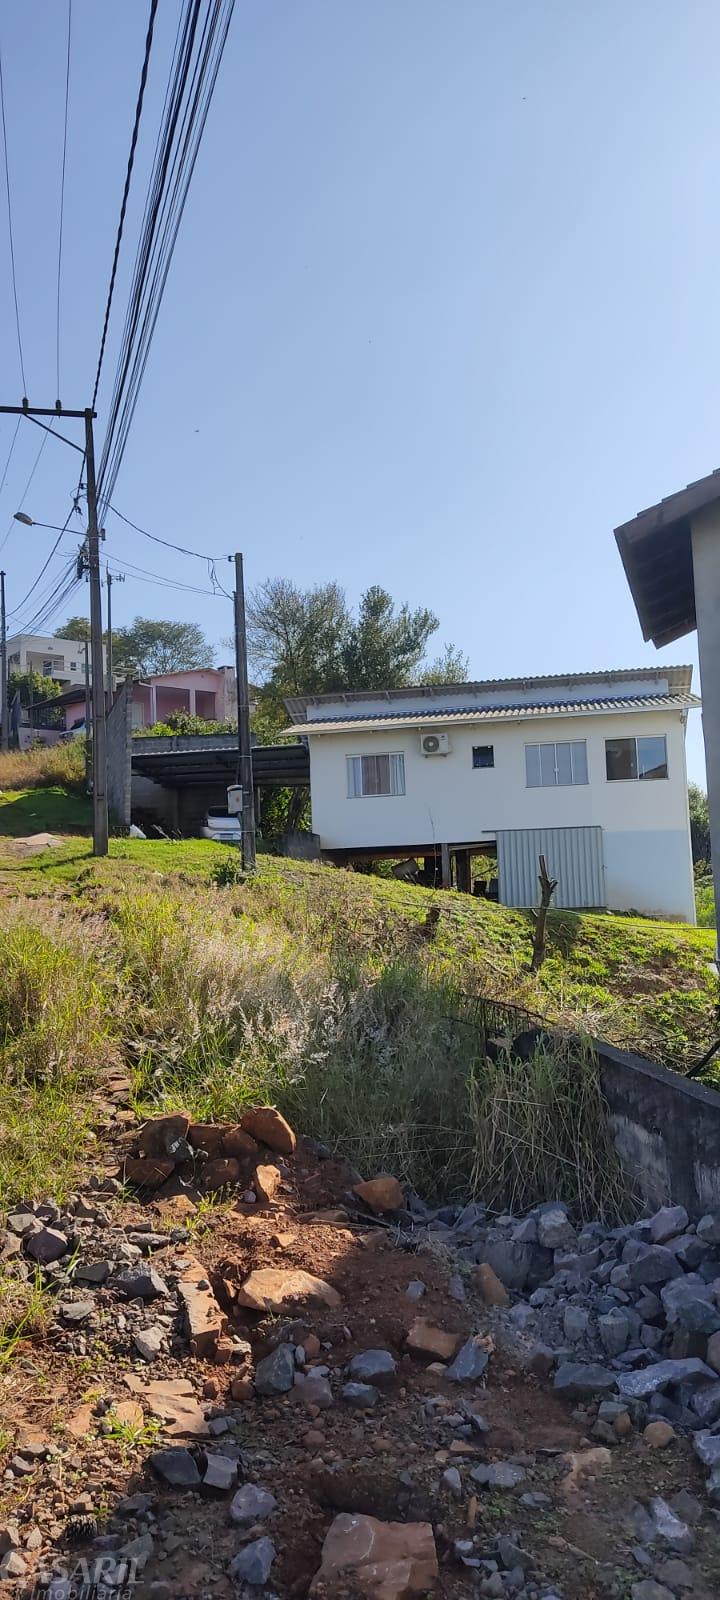 Investimento  Casa Com 2 Dormitórios À Venda, São Miguel, Francisco Beltrao - Pr